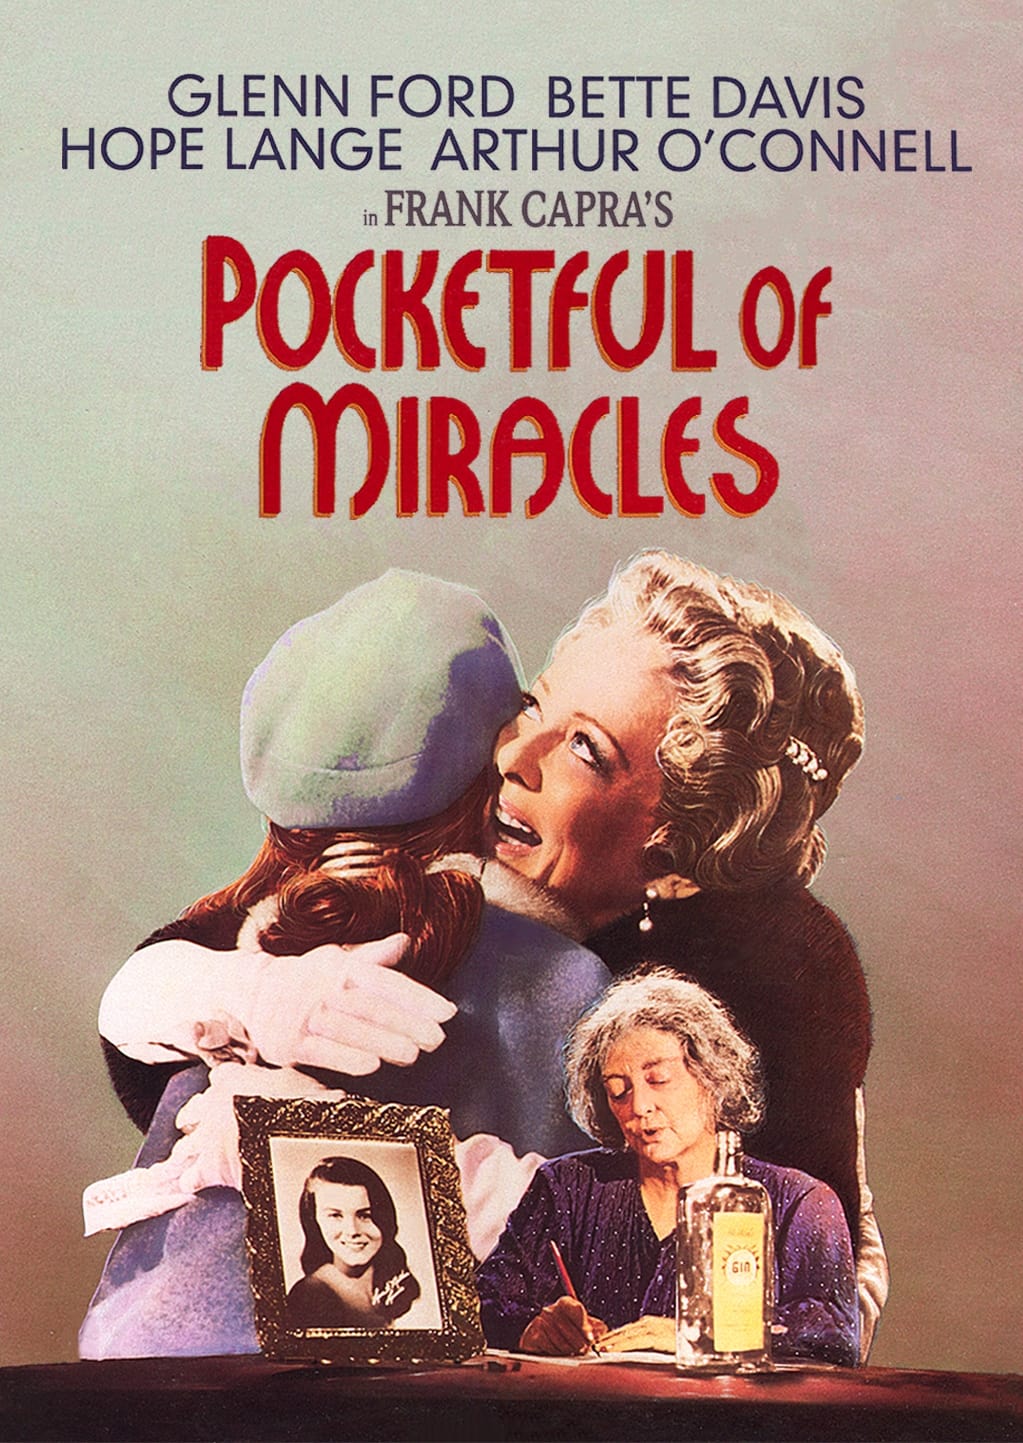 Pocketful of Miracles